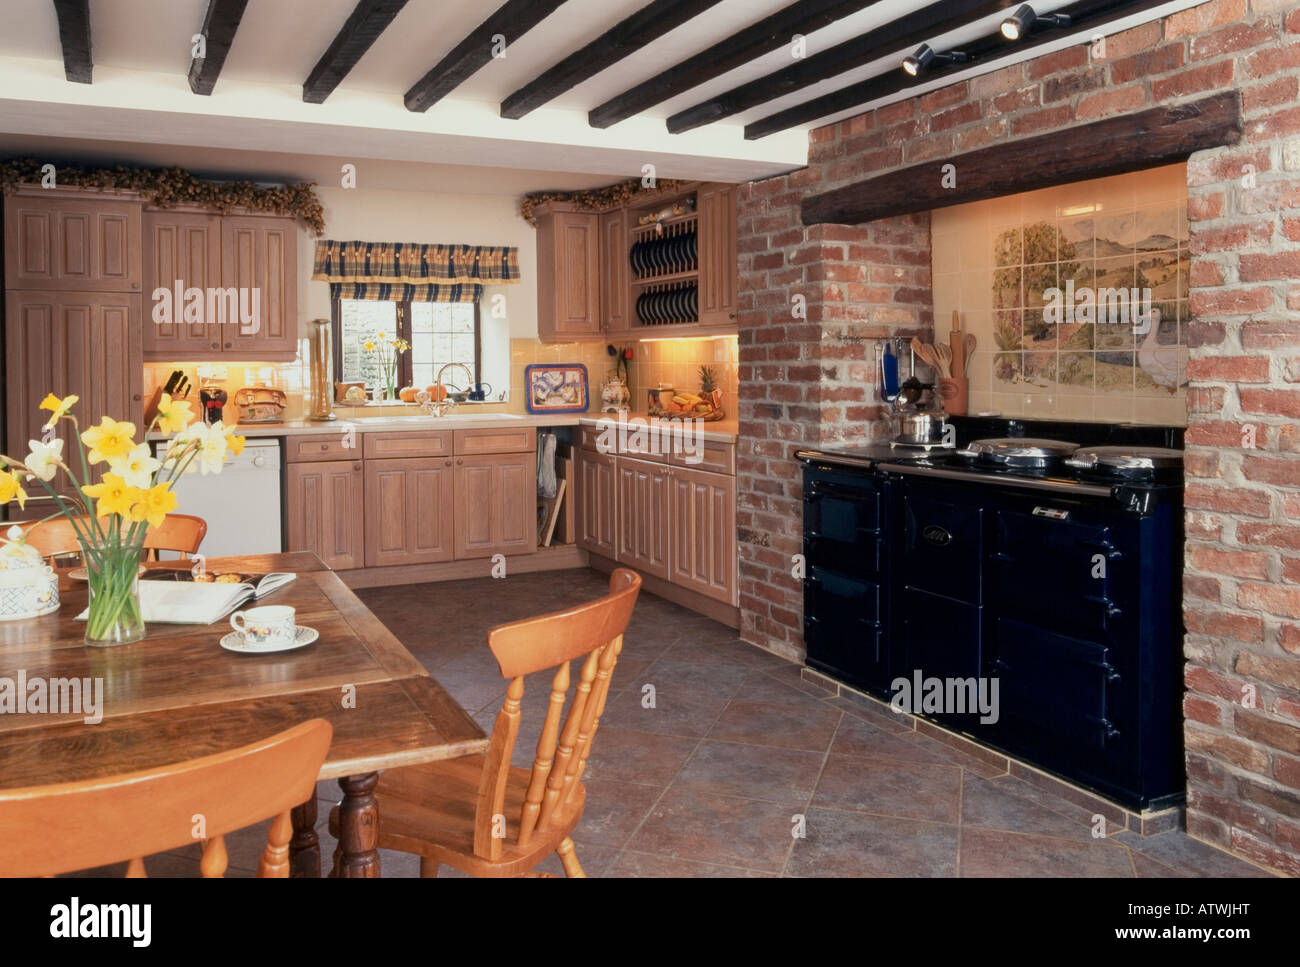 Häusliche Interieur, traditionelle Küche mit AGA-Herd und Deckenbalken Stockfoto